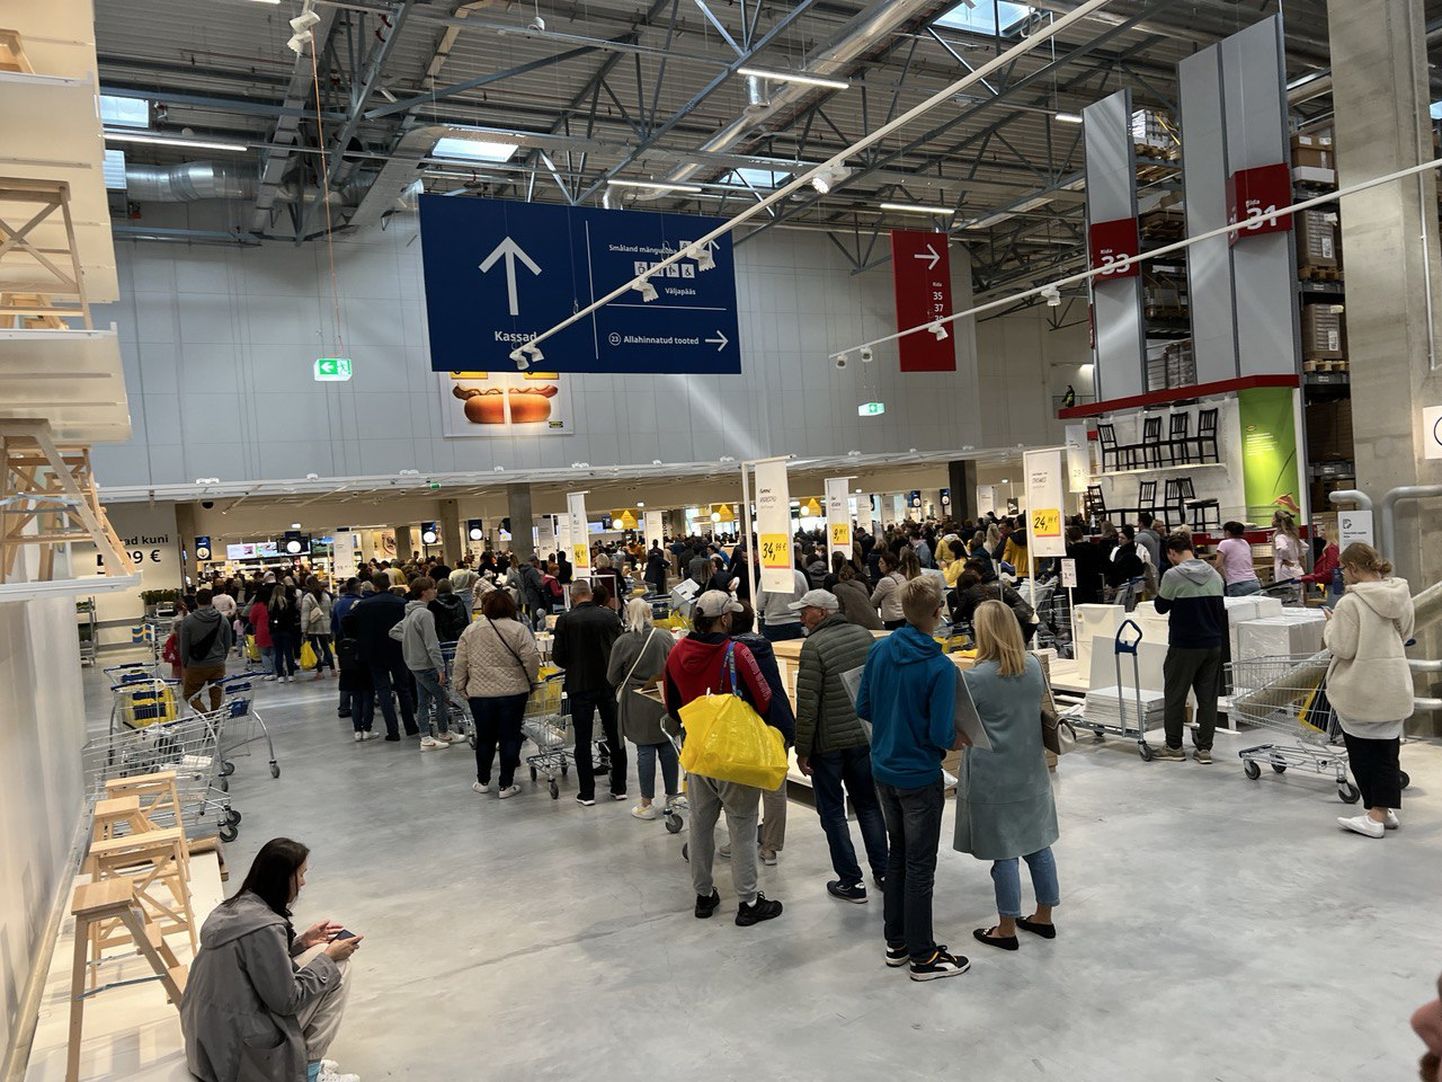 Rahvamassid IKEAs ületasid kaupmehe ootusi ja kaubavarustus jääb seetõttu ostunõudlusele alla.